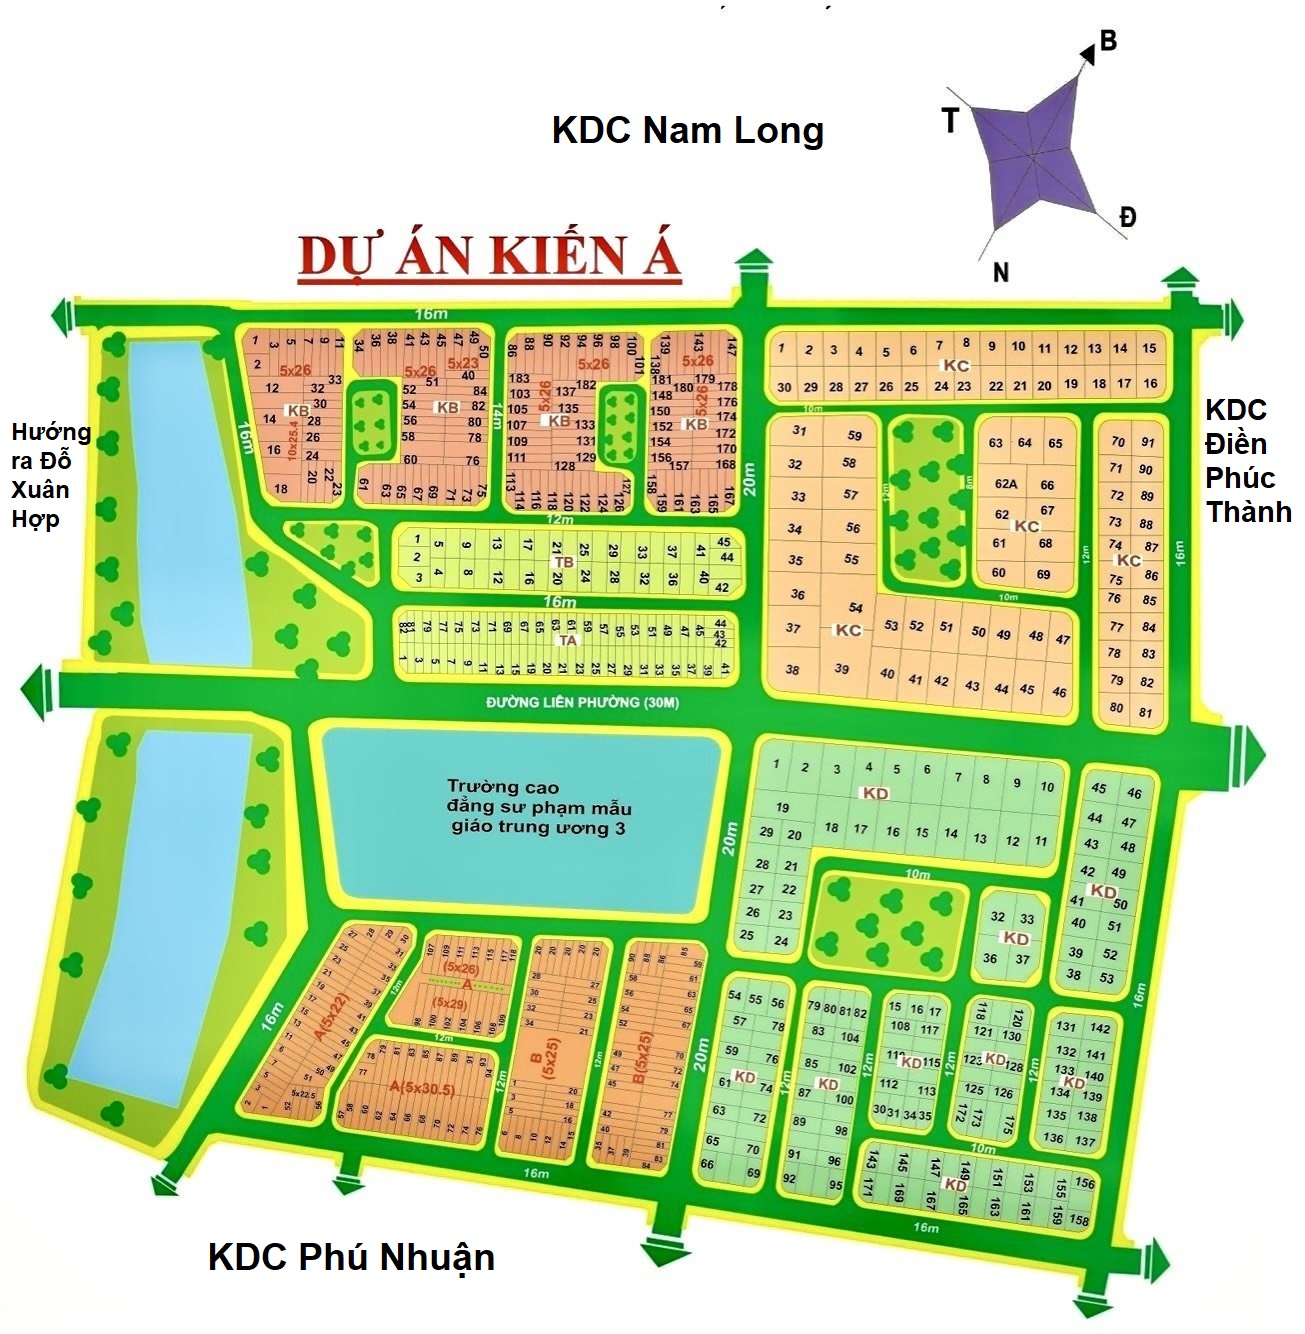 Cần bán đất nền Dự án KDC Kiến Á đa dạng diện tích từ 200m2 , sổ đỏ riêng đường Liên Phường, Quận 9, TPHCM 13482719